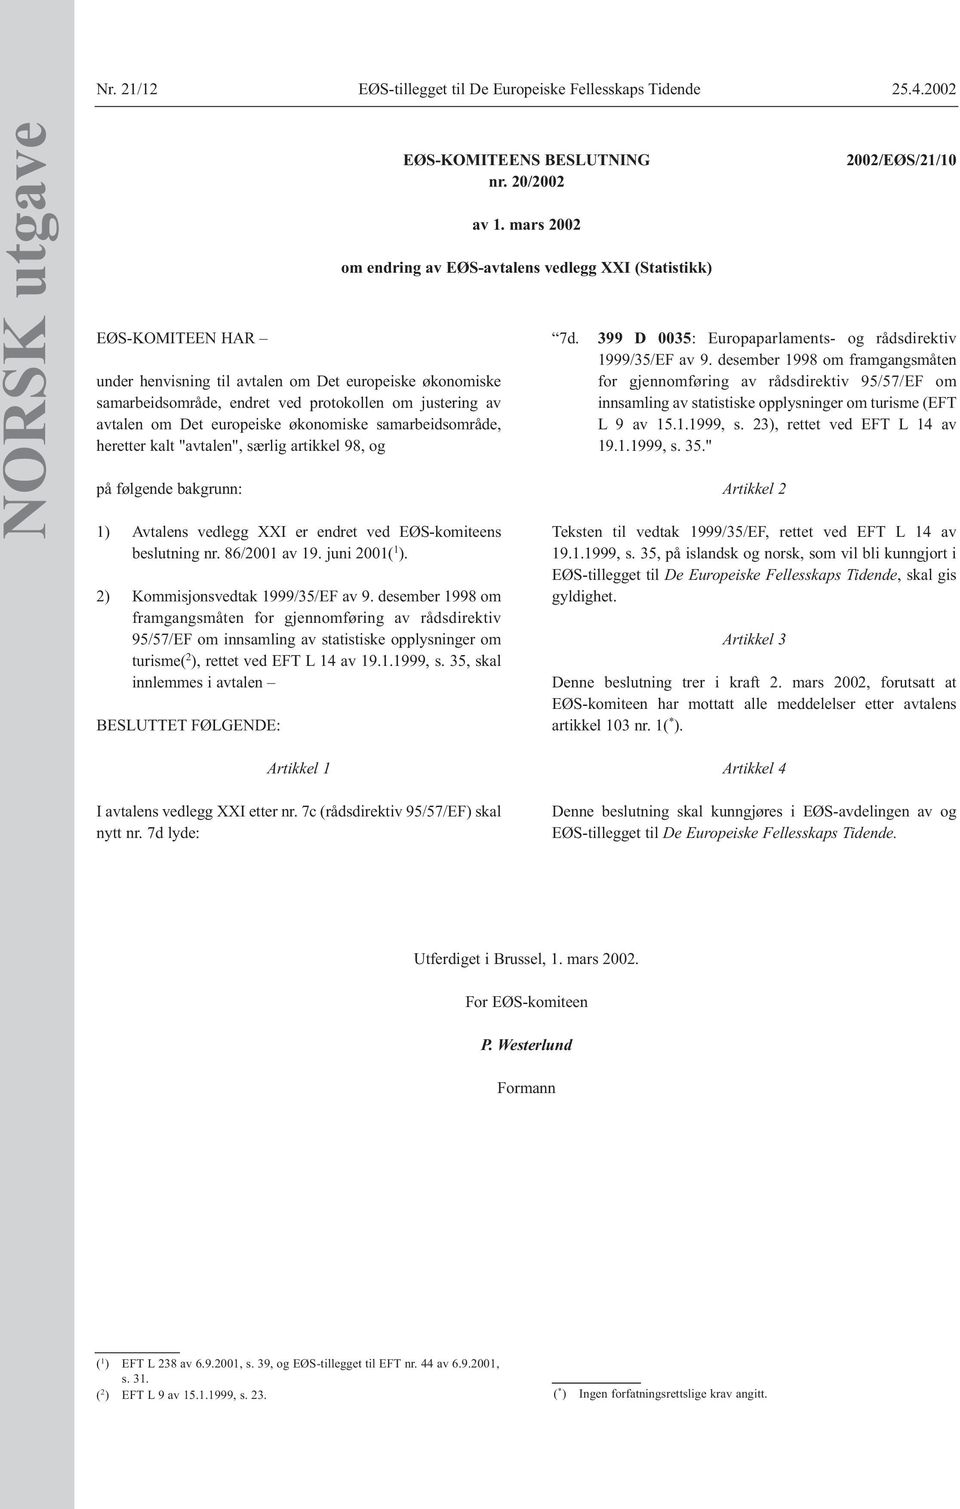 samarbeidsområde, heretter kalt "avtalen", særlig artikkel 98, og på følgende bakgrunn: 1) Avtalens vedlegg XXI er endret ved EØS-komiteens beslutning nr. 86/2001 av 19. juni 2001( 1 ).